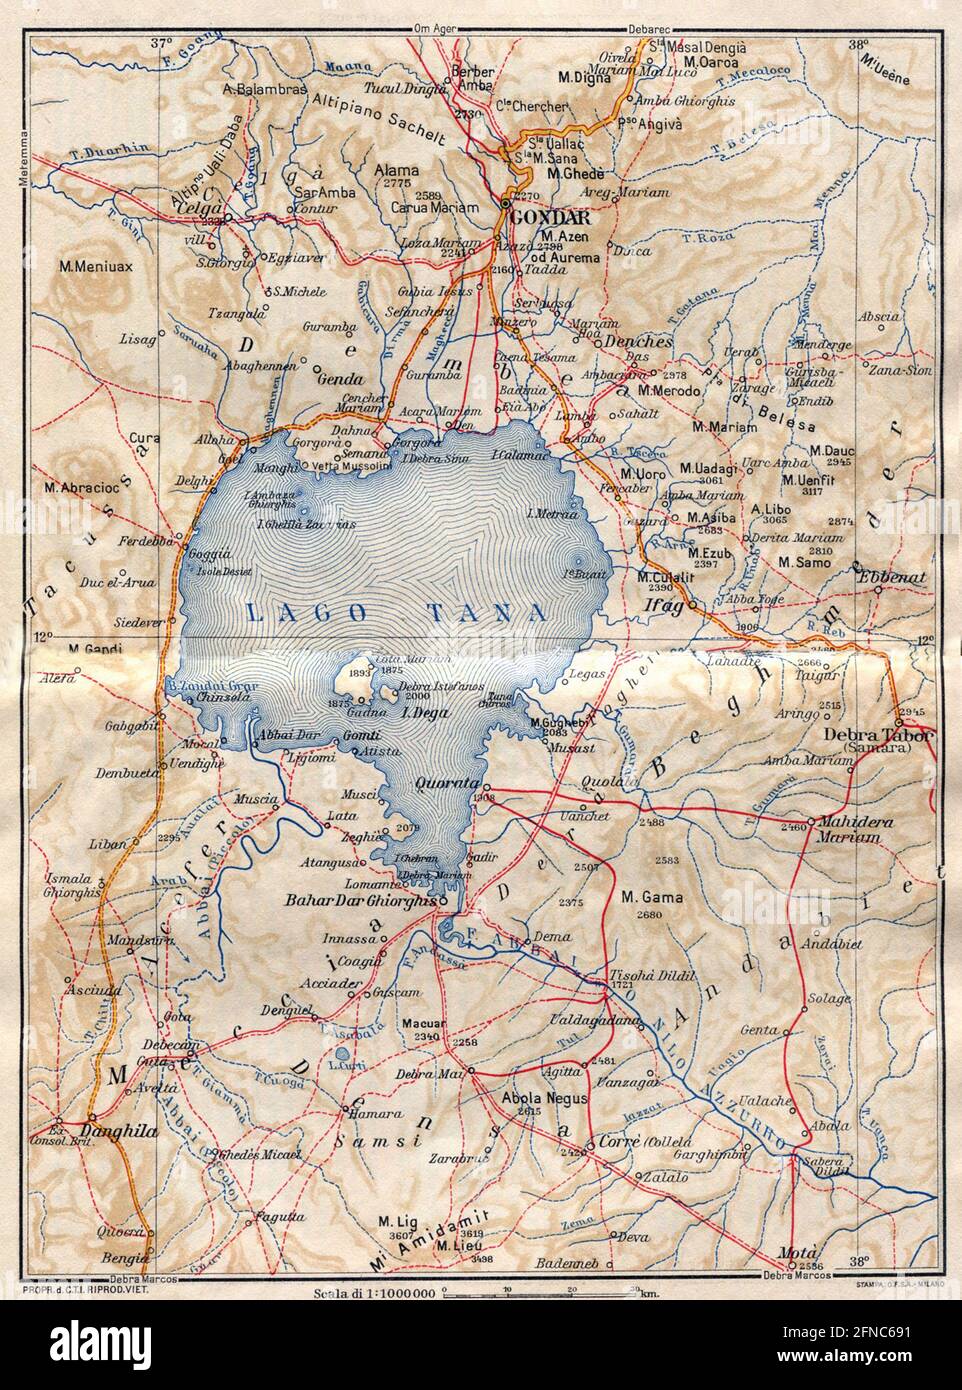 Antica mappa della regione del Lago di Tana, Etiopia (immagine della guida italiana dell'Africa orientale edizione 1938) Foto Stock